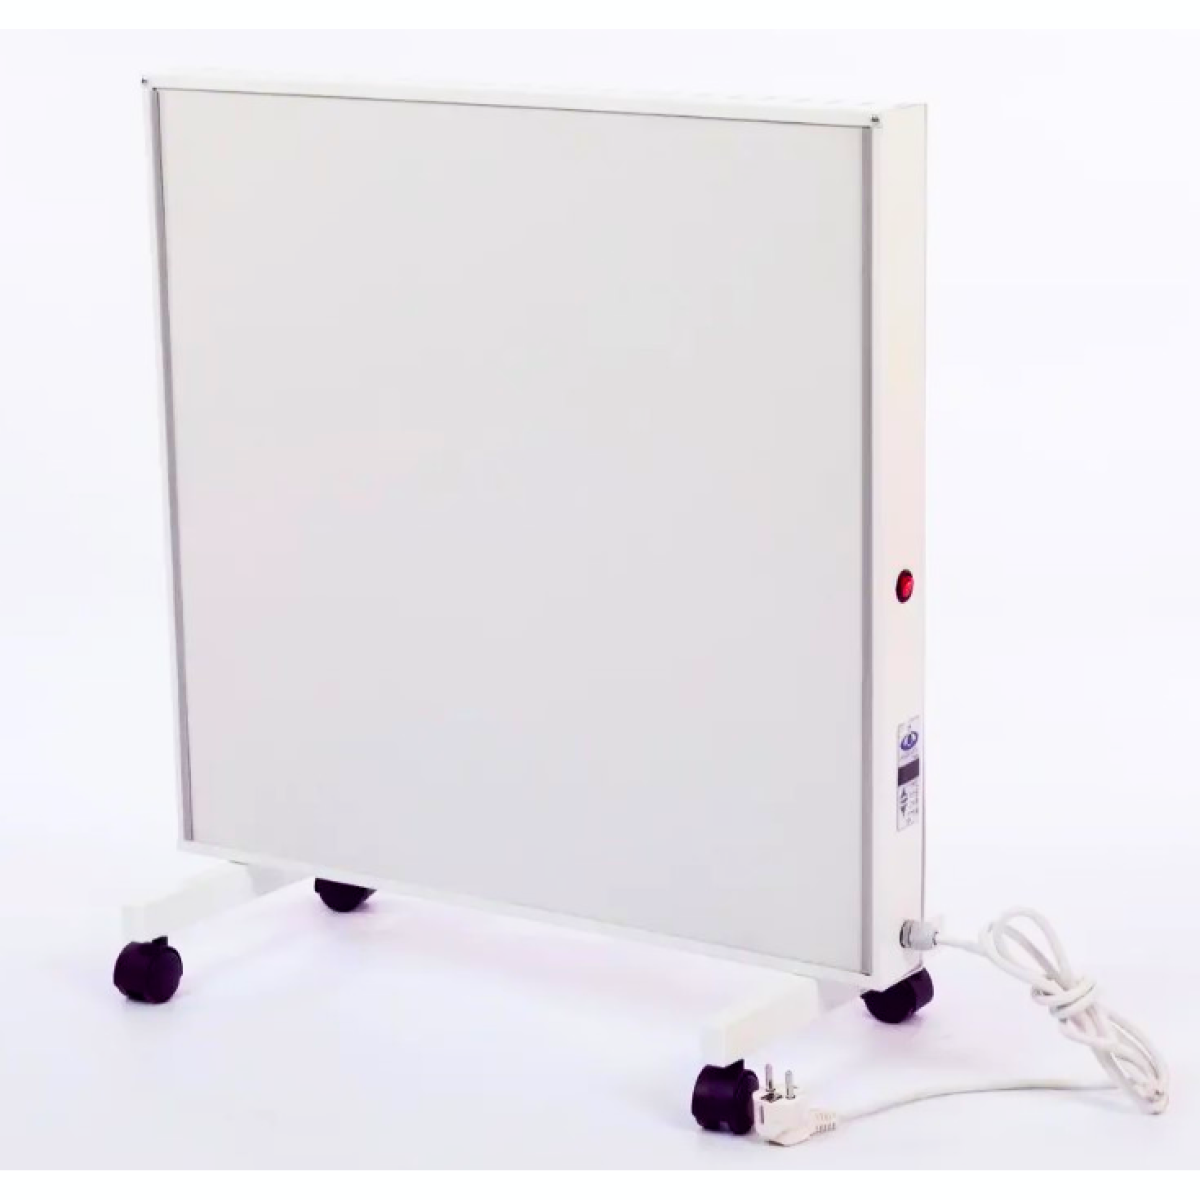 Керамічний обігрівач Фіджо FijoTerm 700 K (60.5 х 62.5 см). Інфрачервоне електричне опалення